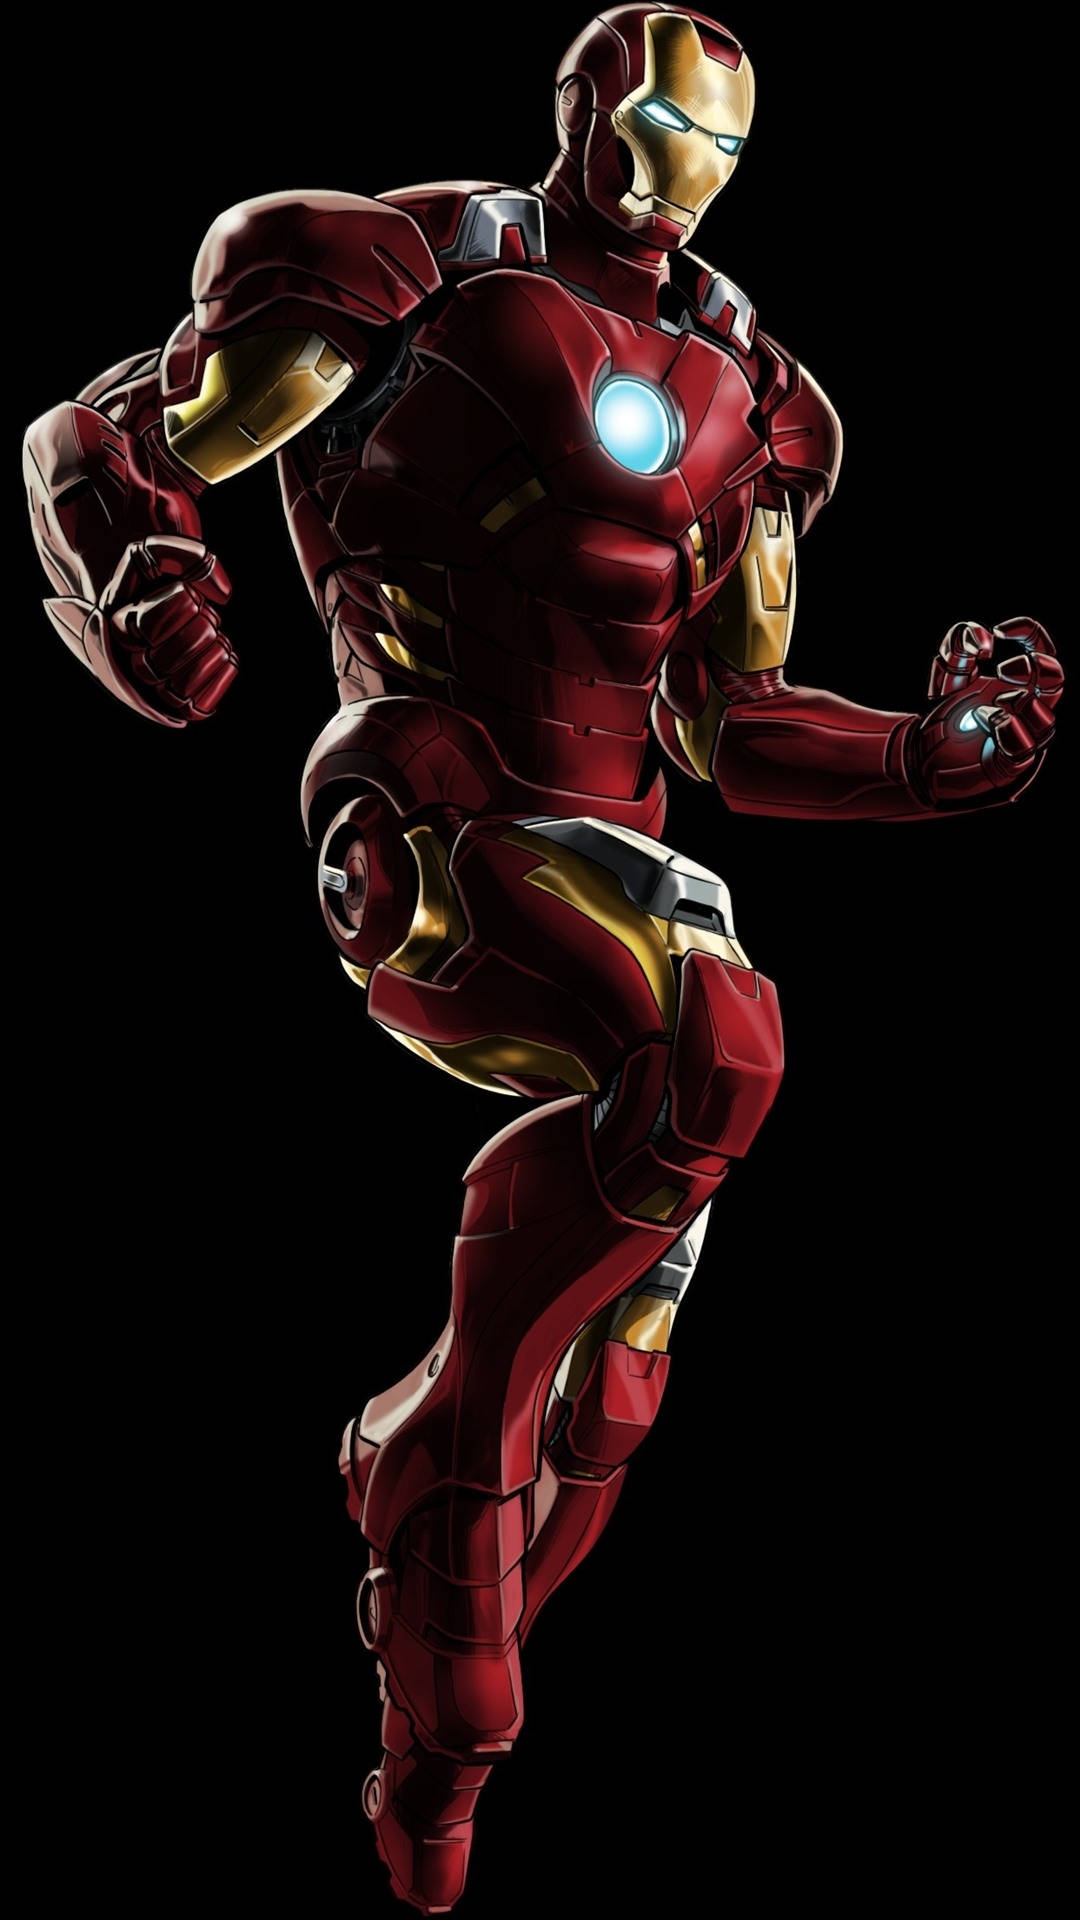 Hdschwarzer Hintergrund Iron Man Superheld Wallpaper